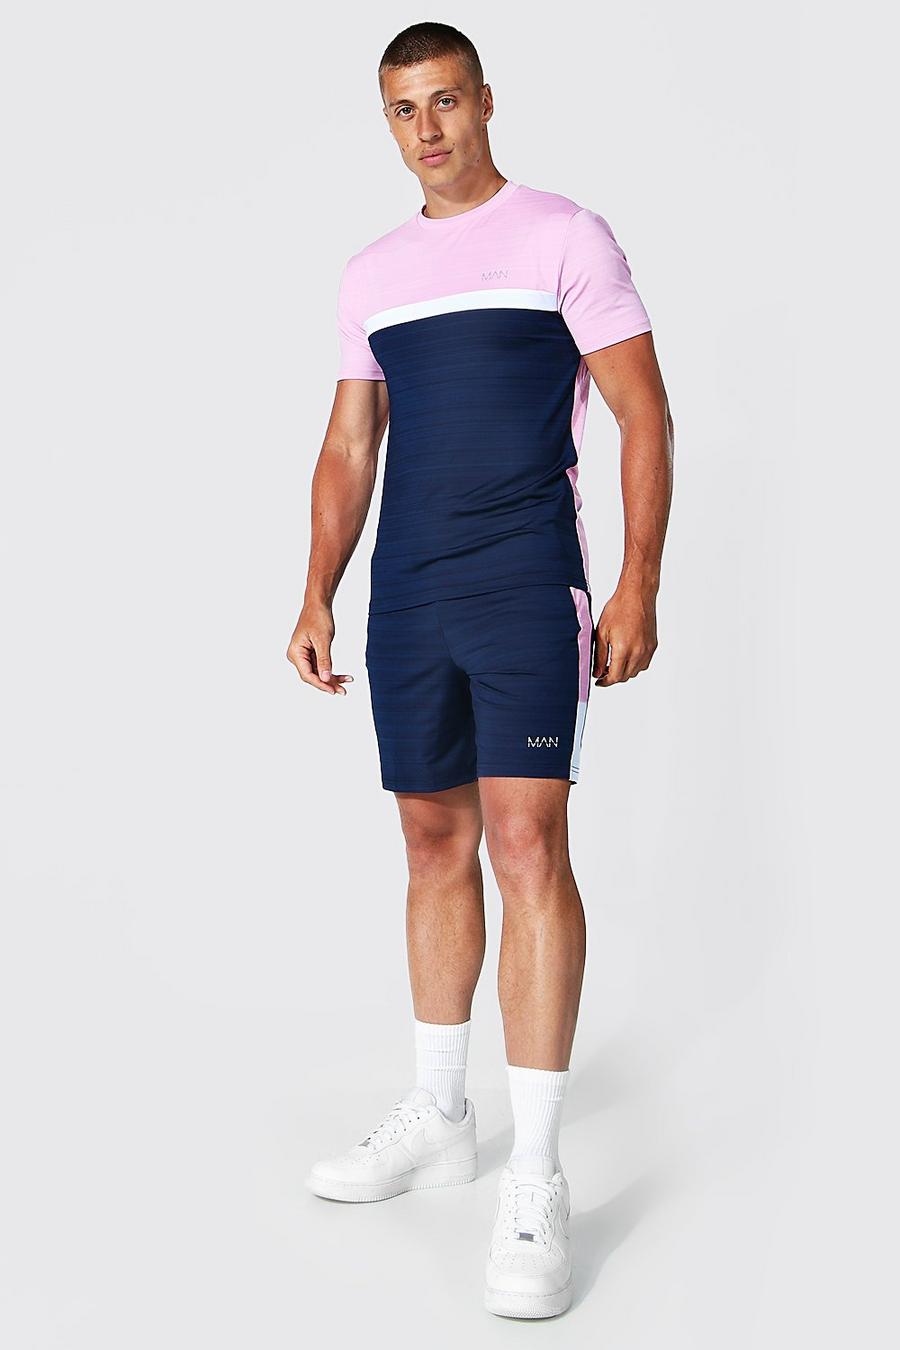 Chándal MAN Active jaspeado de pantalón corto con colores en bloque, Pink image number 1